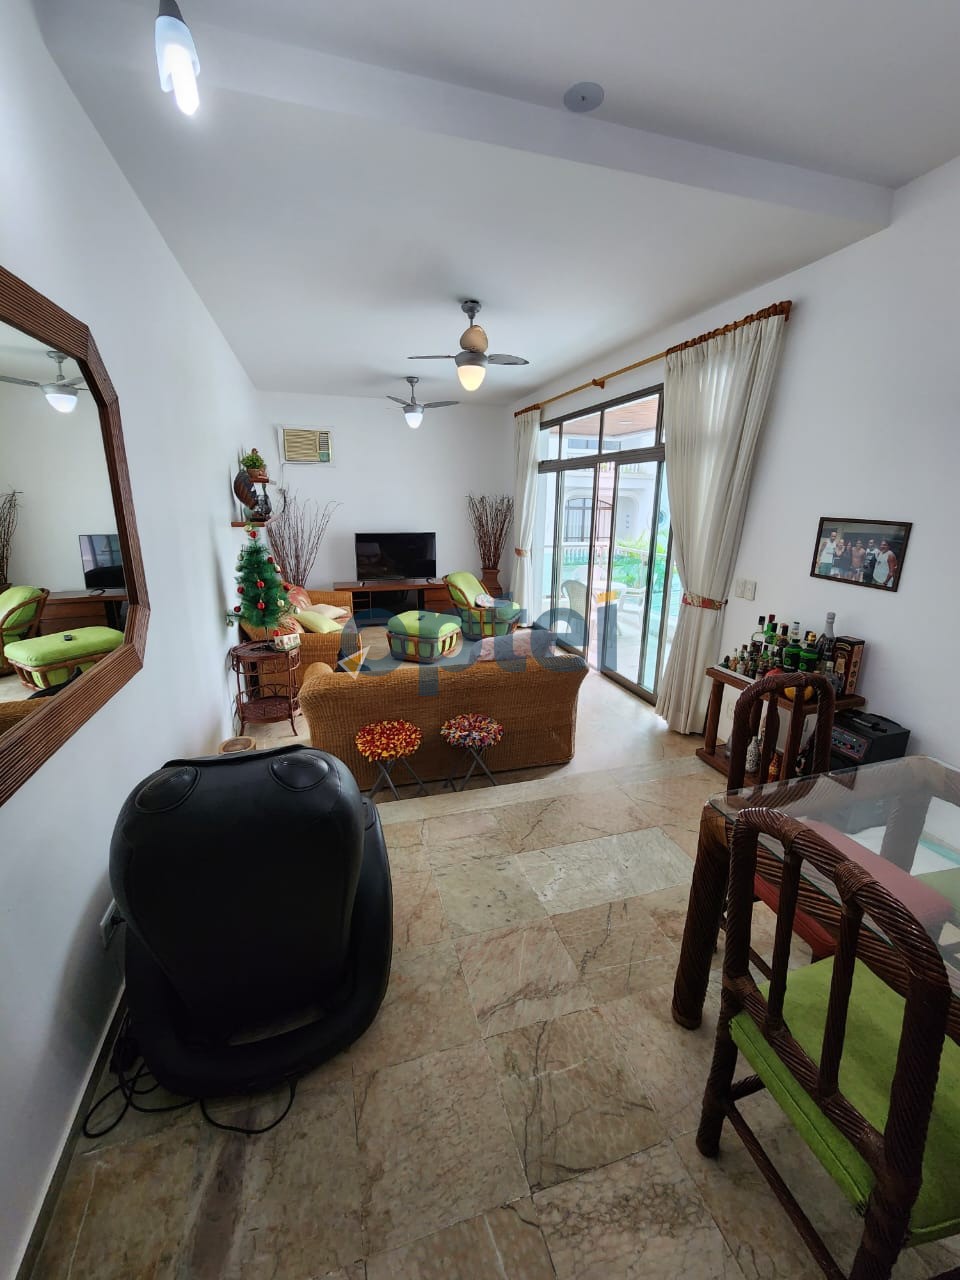 Apartamento mobiliado com 4 dormitórios (3 suítes), 2 vagas cobertas, 170 m² a duas quadras da praia da Enseada - Guarujá